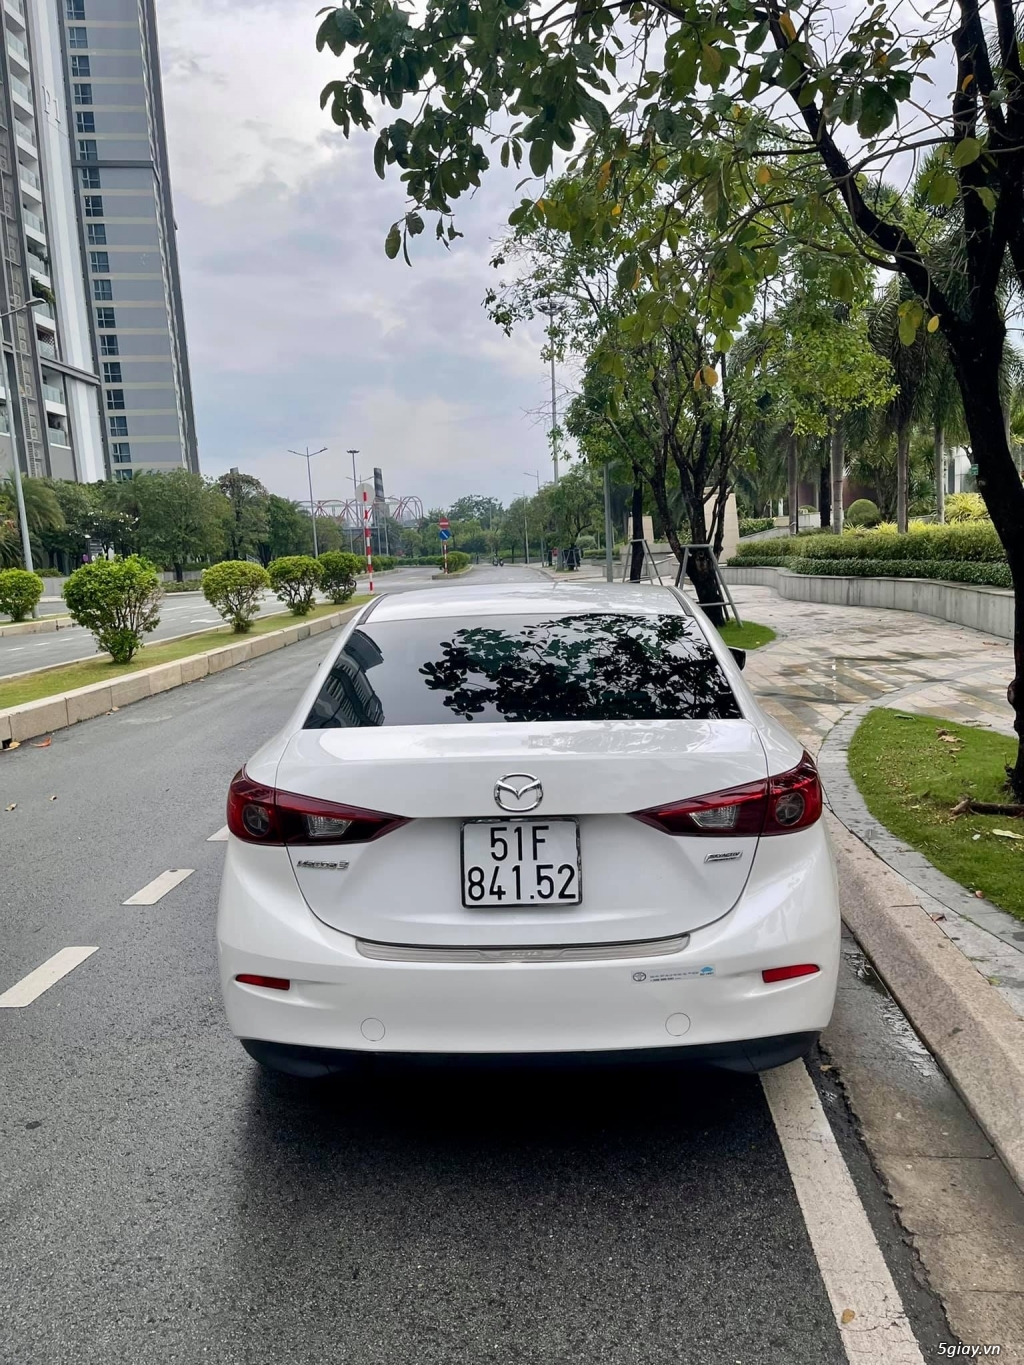 Mazda 3 Sx 2016 Trắng Biển Sài Gòn - 6